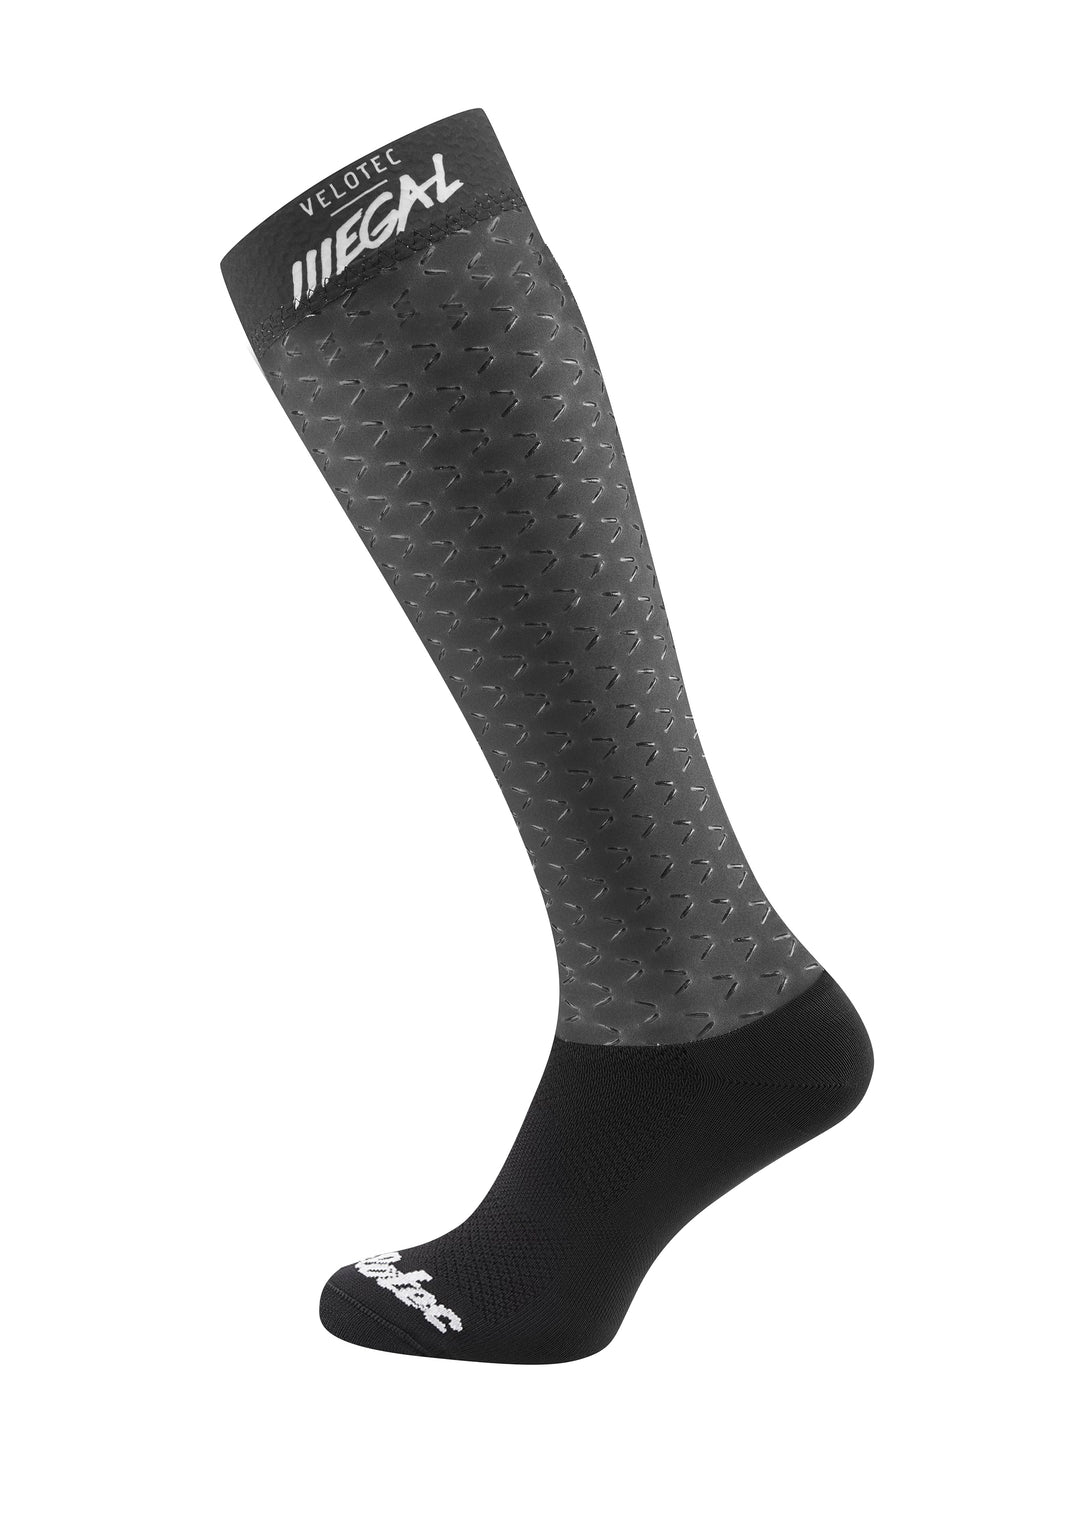 Custom ILLEGAL UCI High Aero Socks